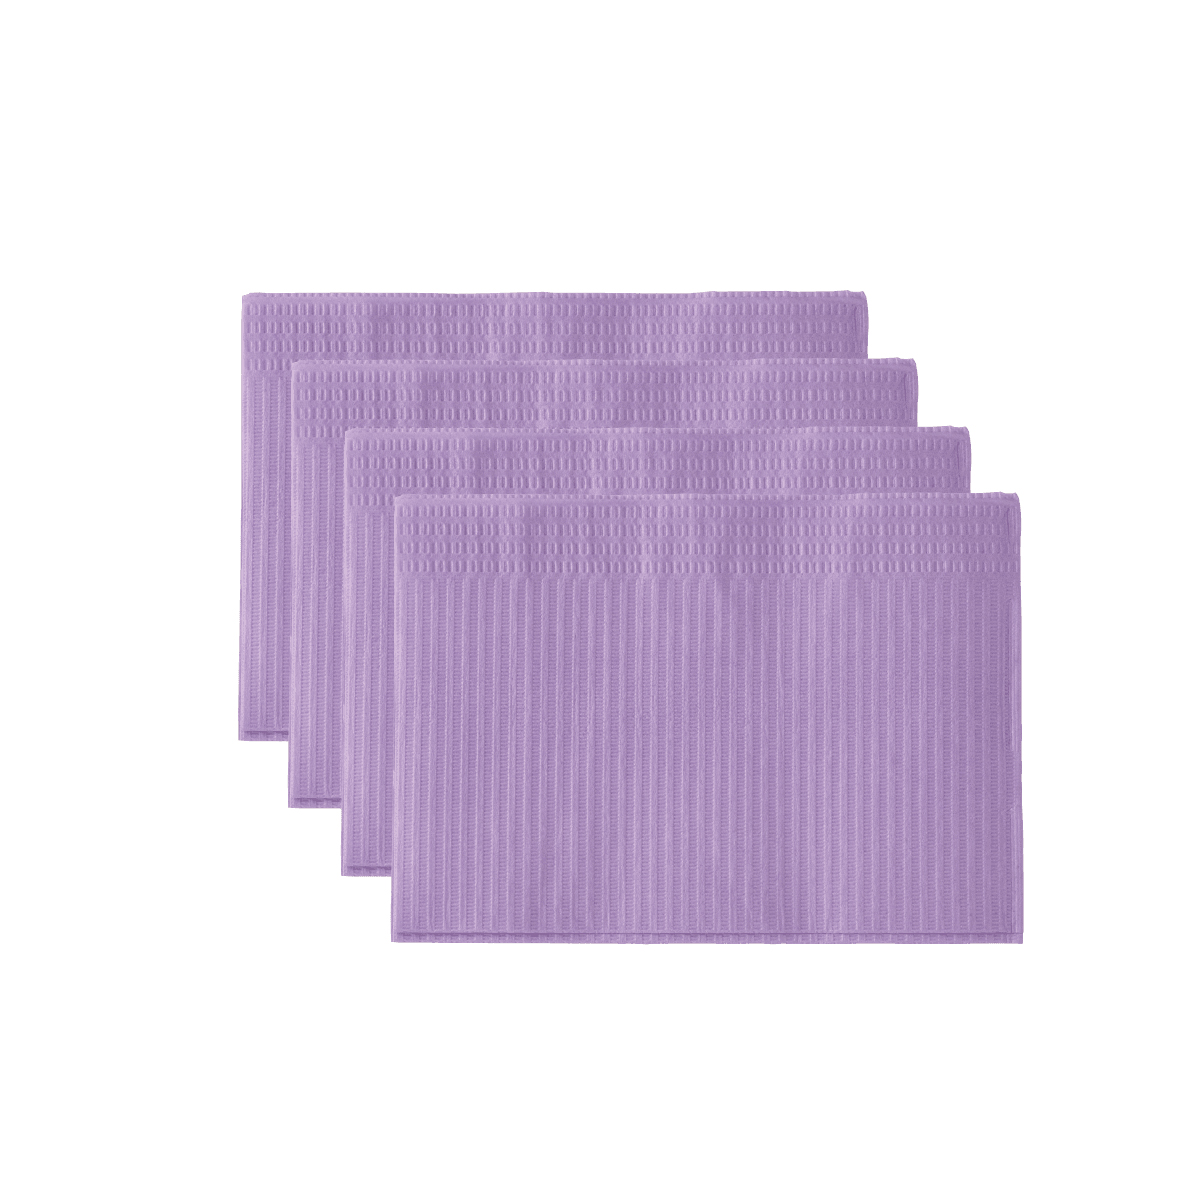 Monoart Patientenservietten Towel UP Farbe: lila (Euronda)